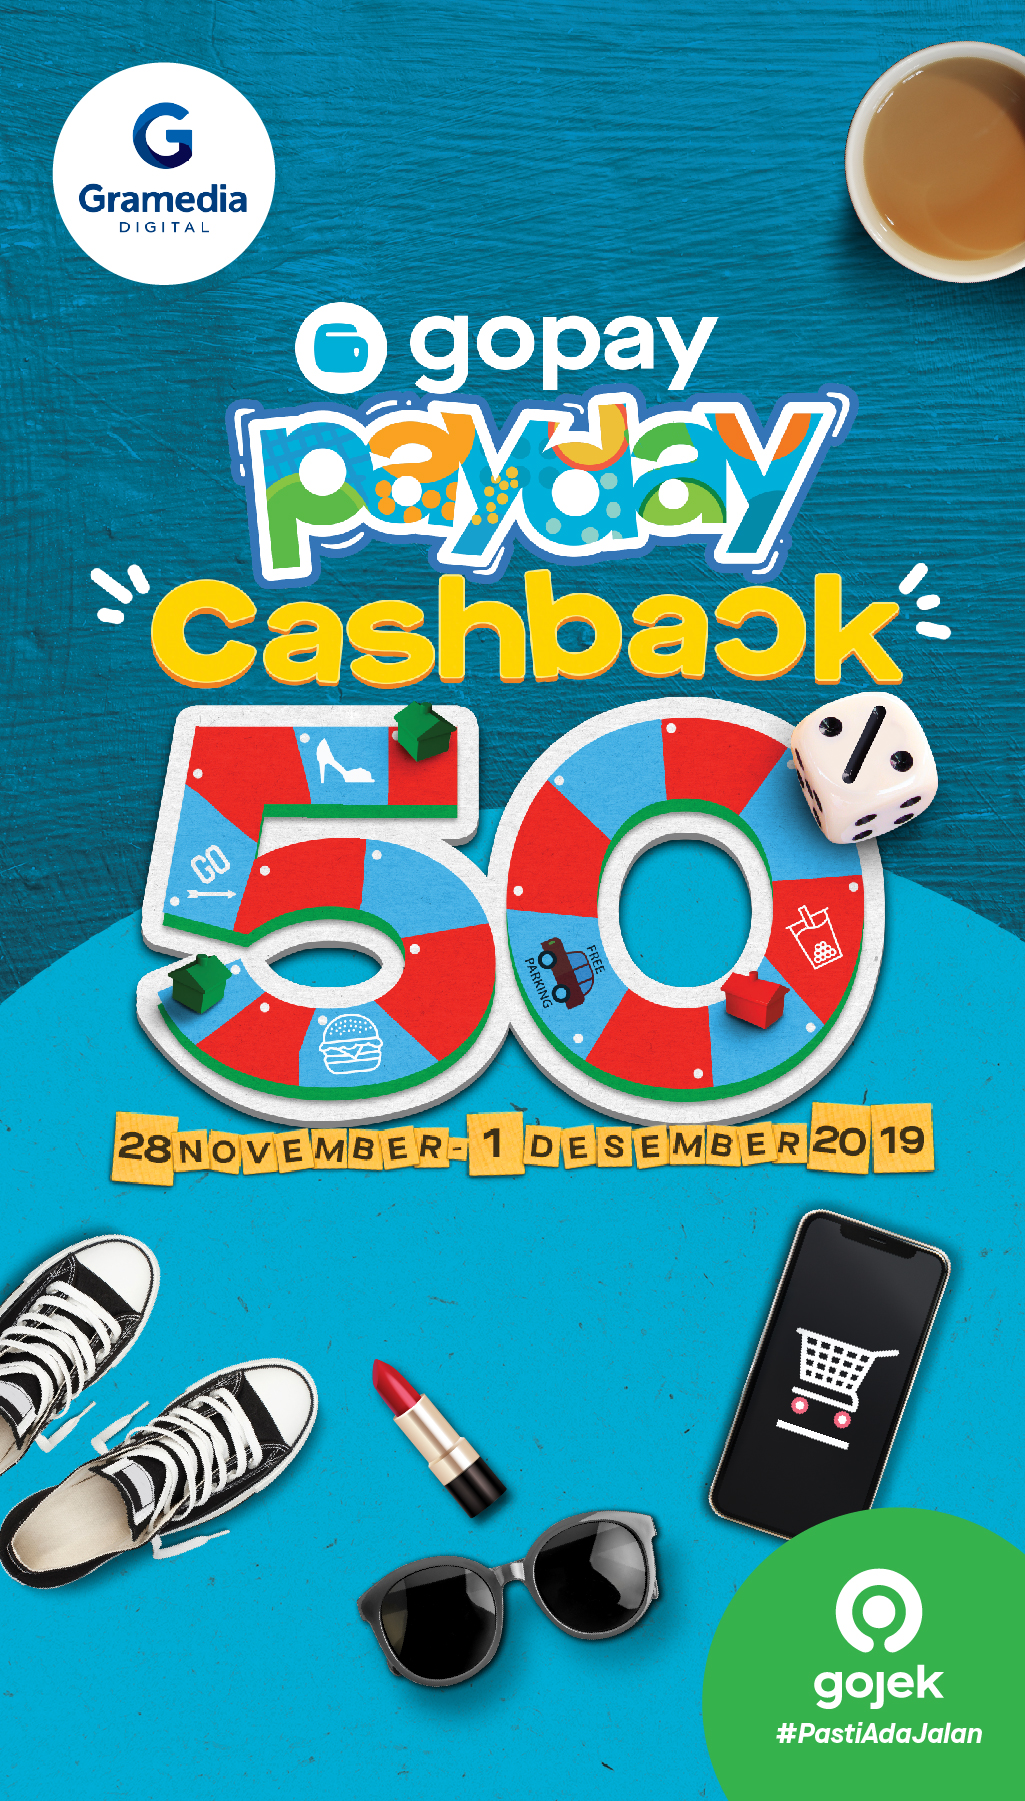 Gopay Payday Gramedia Digital Cashback 50%